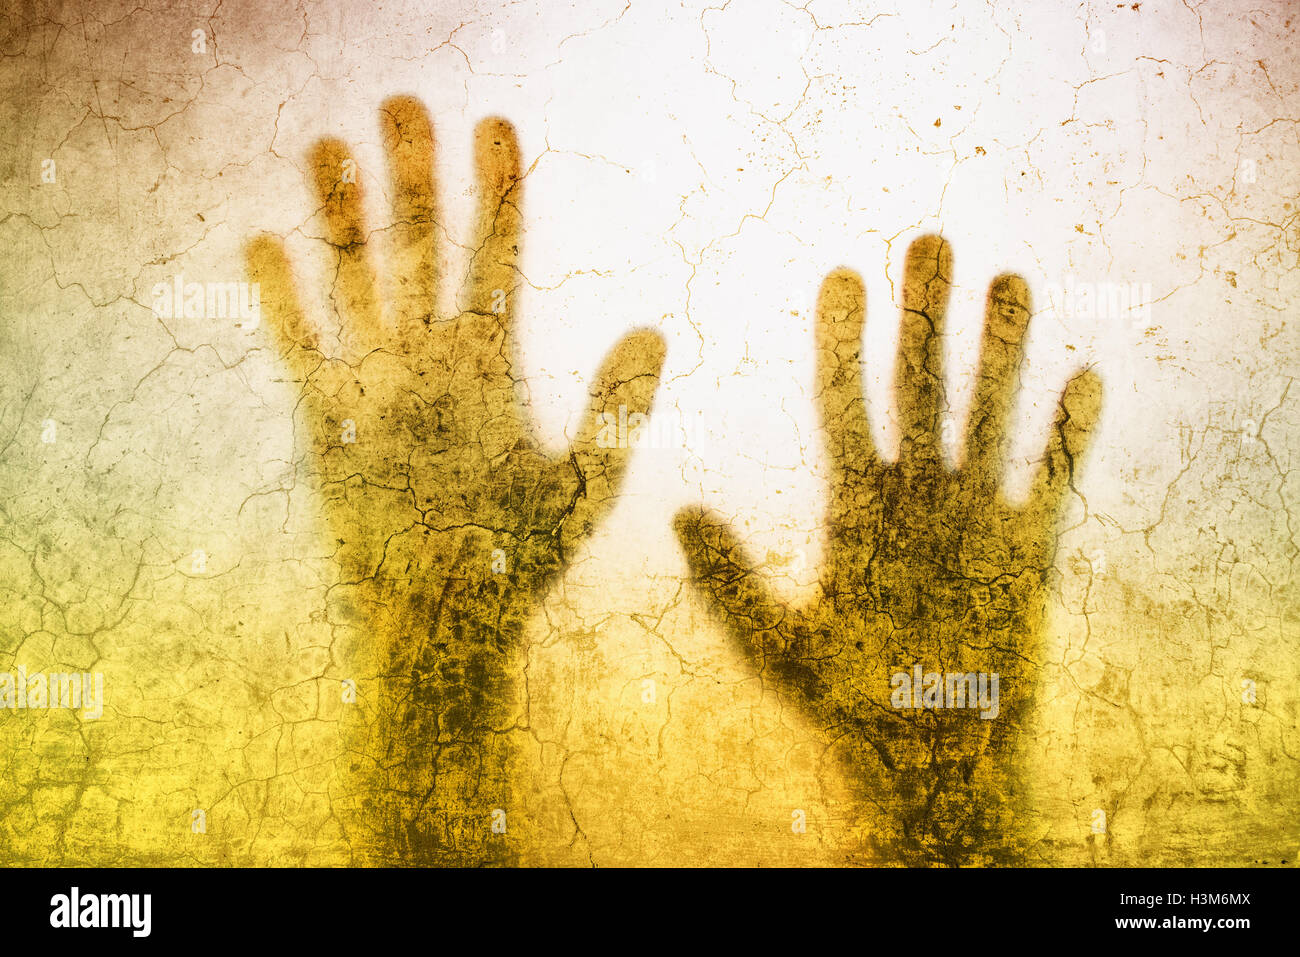 Rückseite beleuchteten Silhouette der eingeschlossene Person Hände hinter Mattglas, nützlich als anschauliches Bild für den Menschenhandel, prostitution Stockfoto